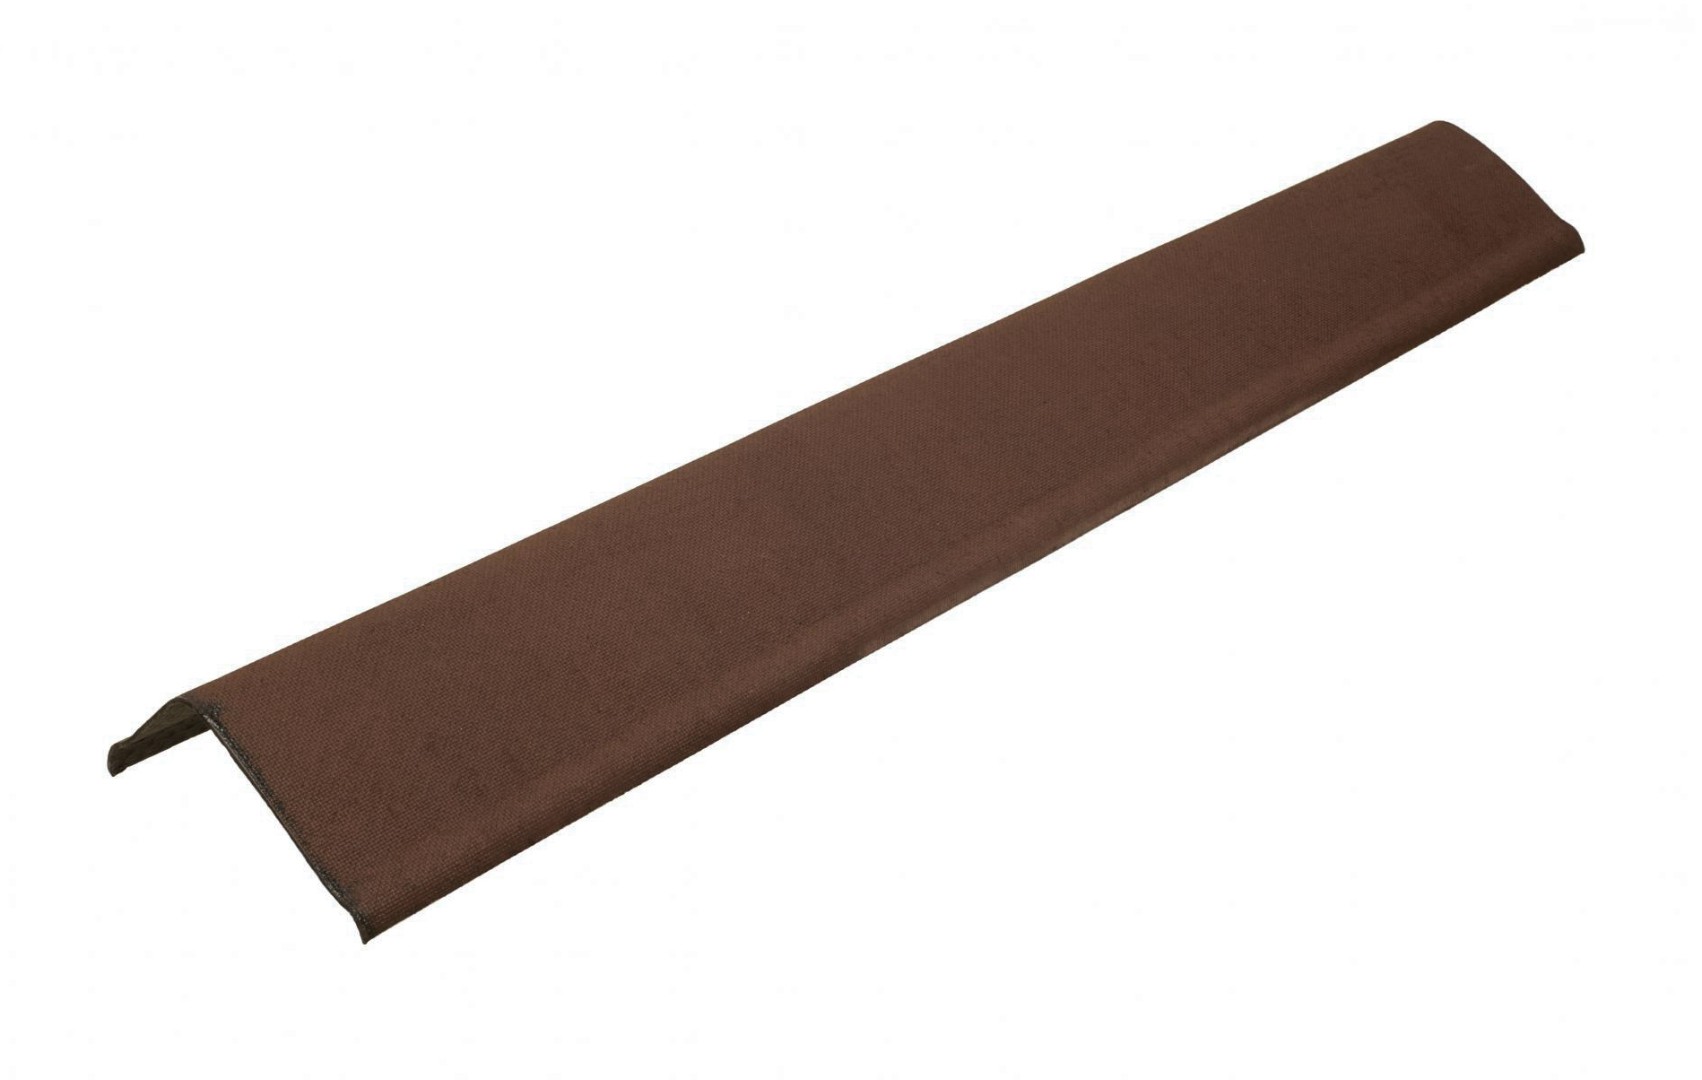 Щипцовый профиль (щипец) Ондулин Smart 1000 мм, коричневый купить в санкт-петербурге